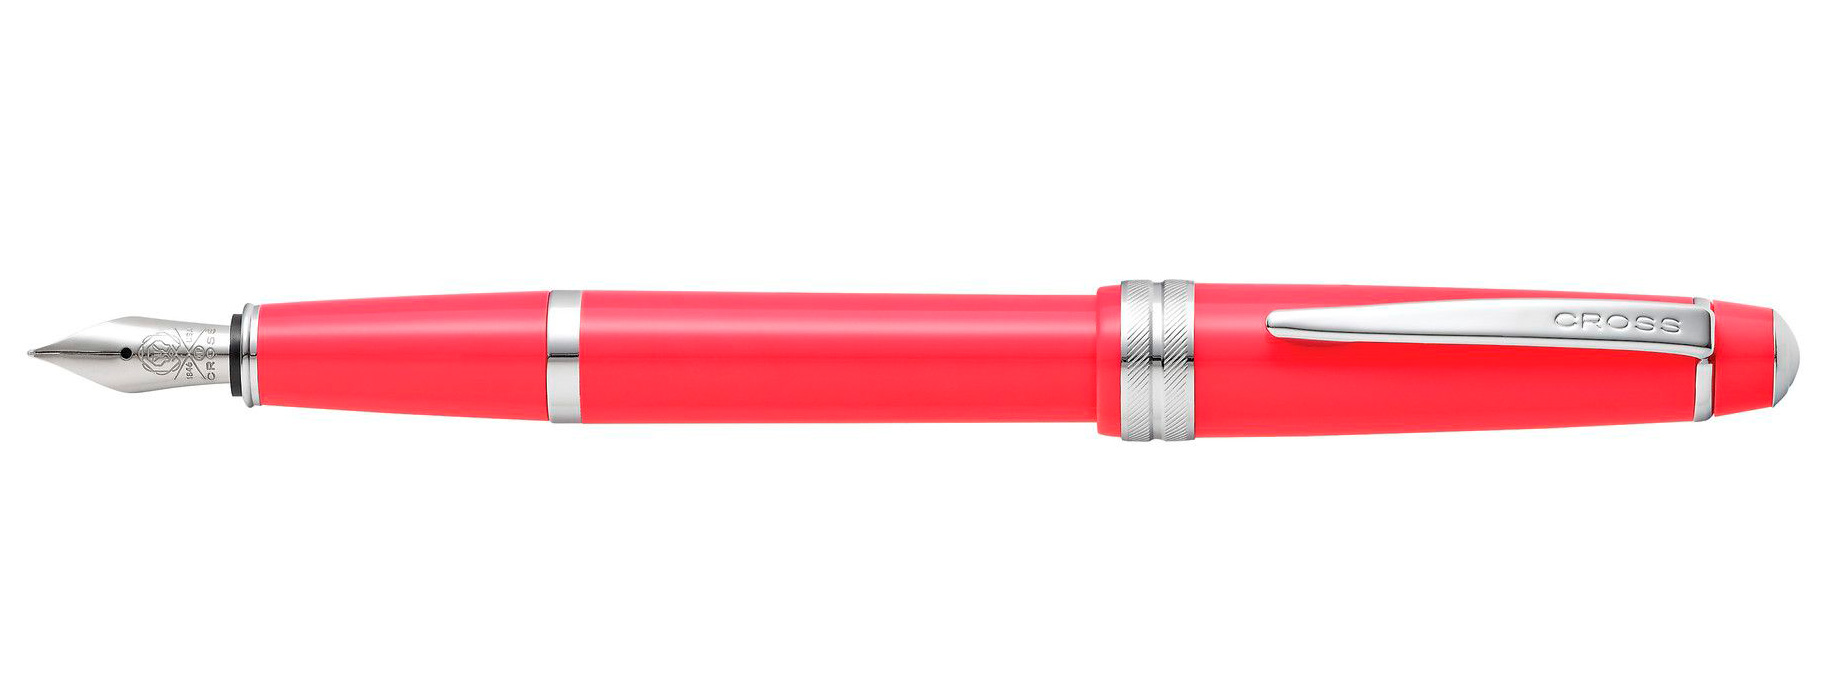 Перьевая ручка Cross Bailey Light Coral перо ультратонкое XF AT0746-5XS